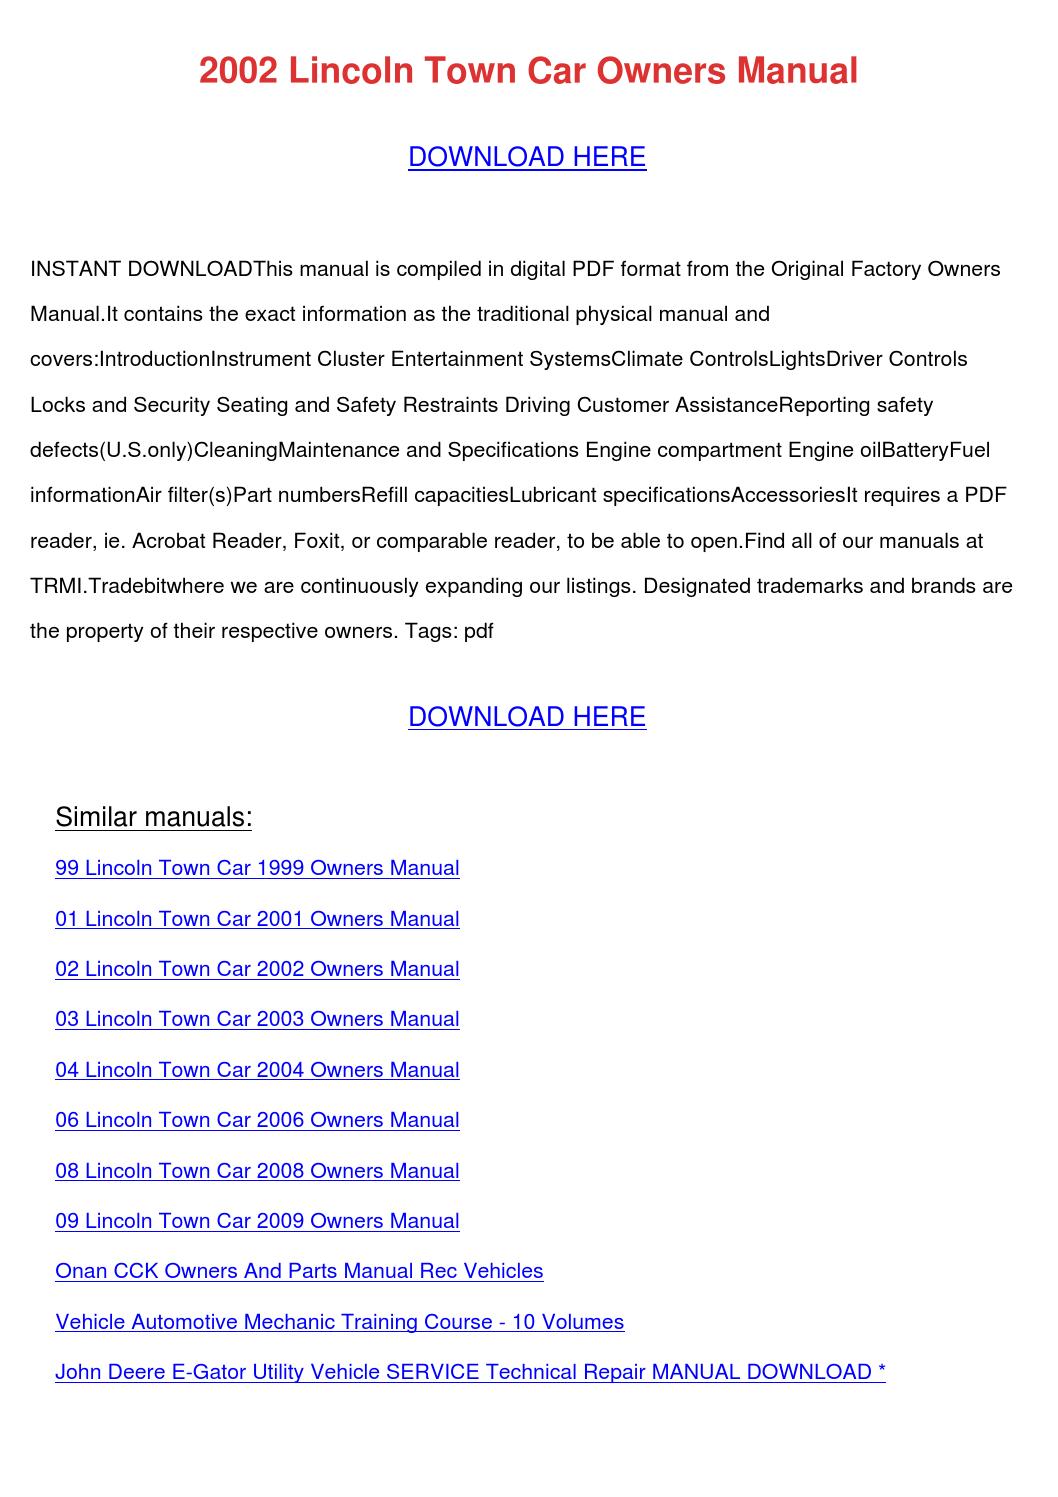 2004 lincoln town car repair manual pdf download